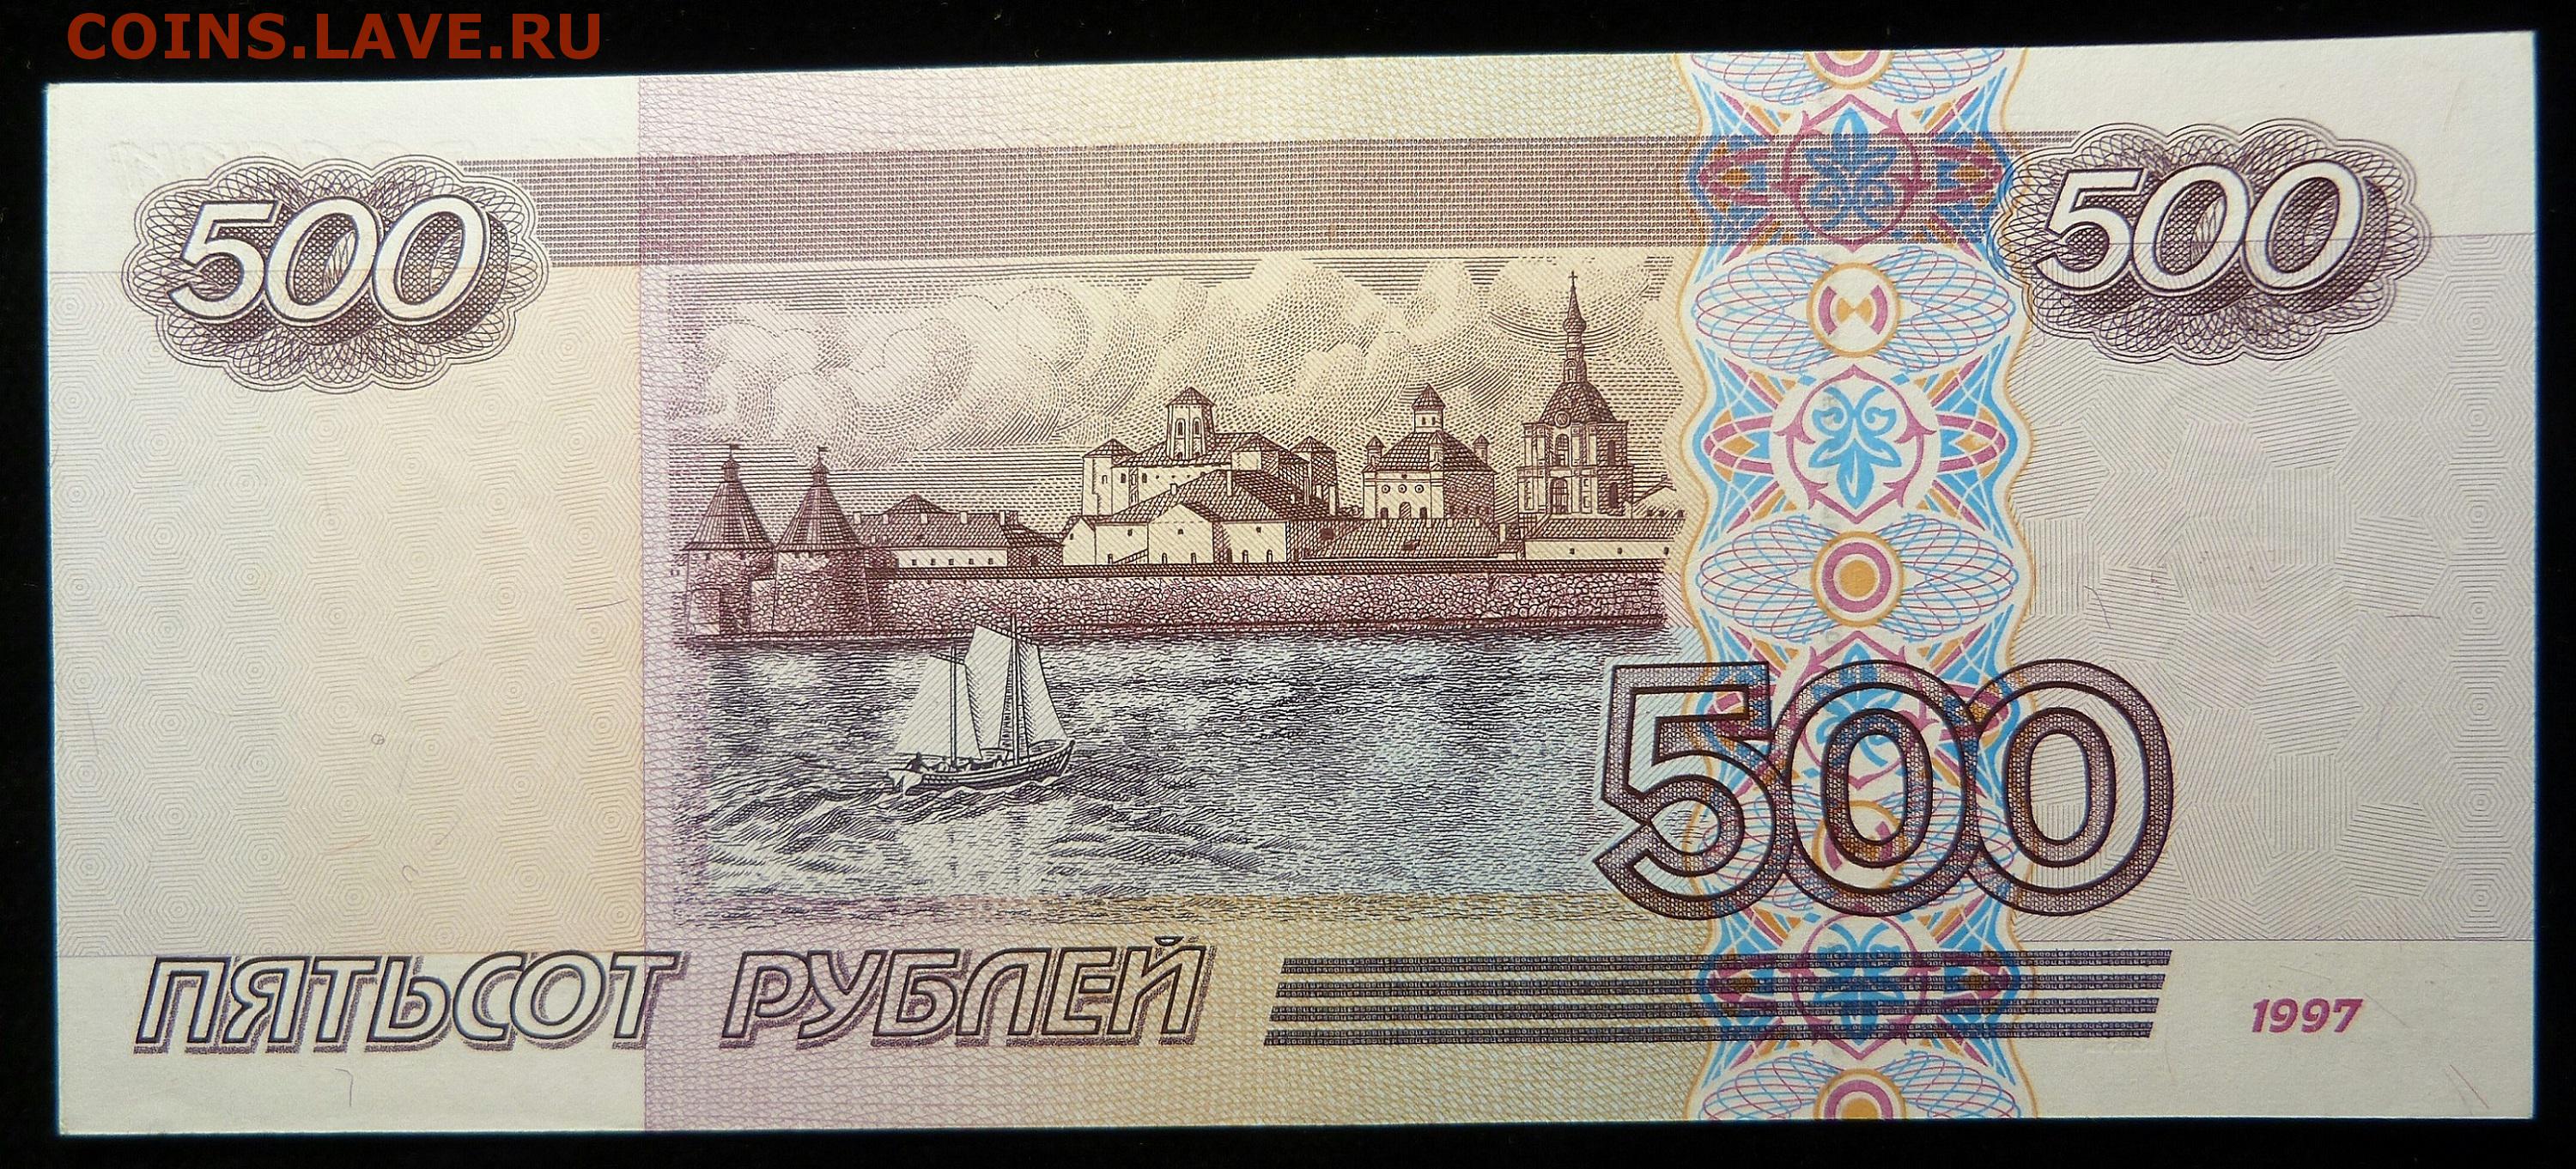 Пятьсот пятьдесят пять тысяч. 500 Рублей 1997 2001 АА. Купюра 500 рублей. 500 Рублей. Купюра 500р.